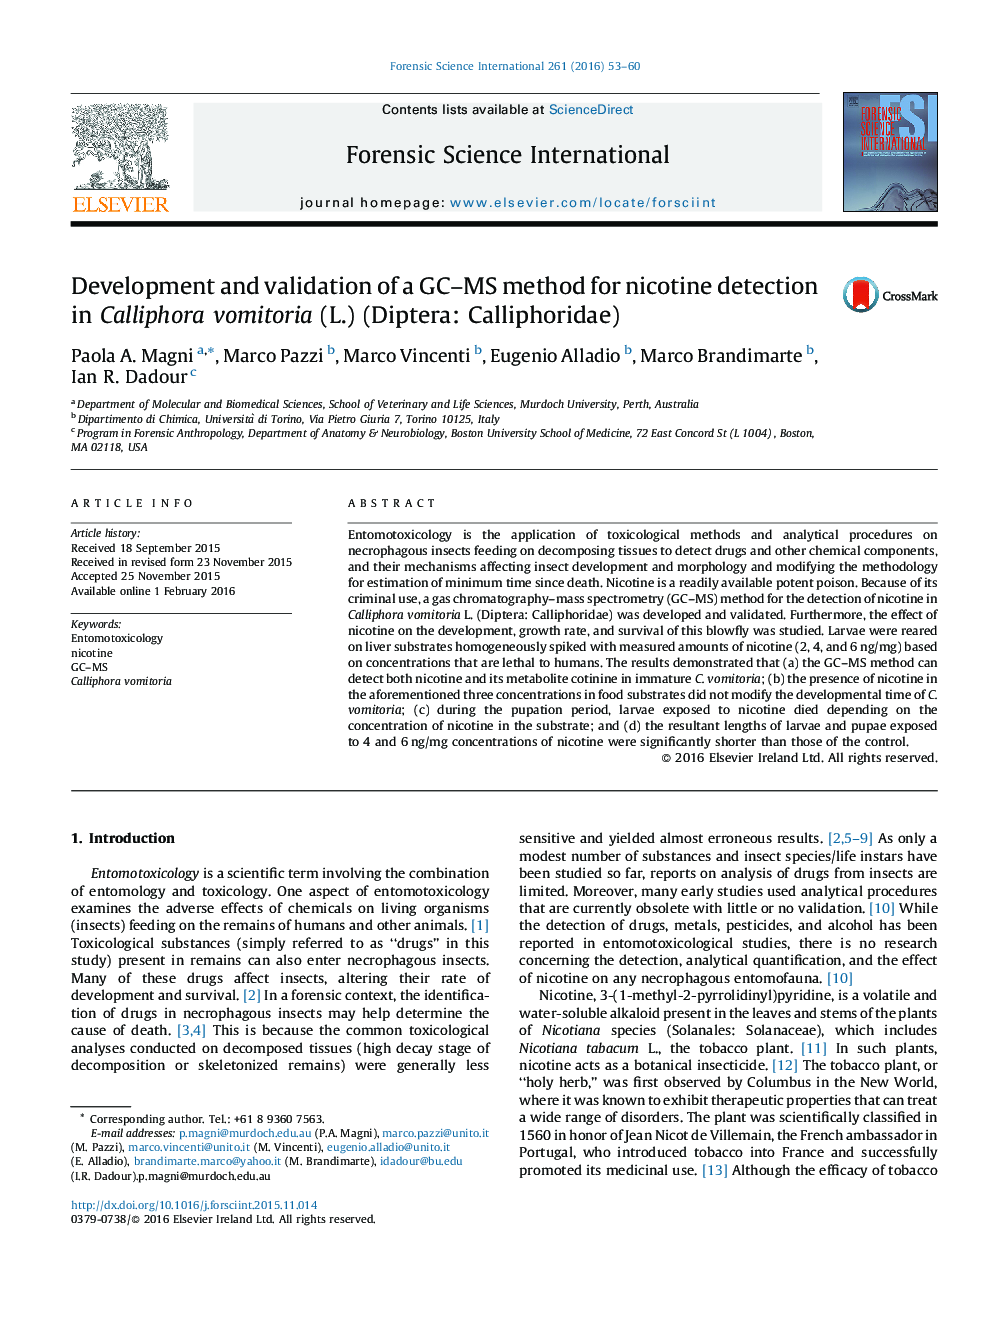 توسعه و اعتبار یک روش GC-MS برای تشخیص نیکوتین موجود در لاشه مگس vomitoria (L.) (دوبالان: مگسهای لاشه)